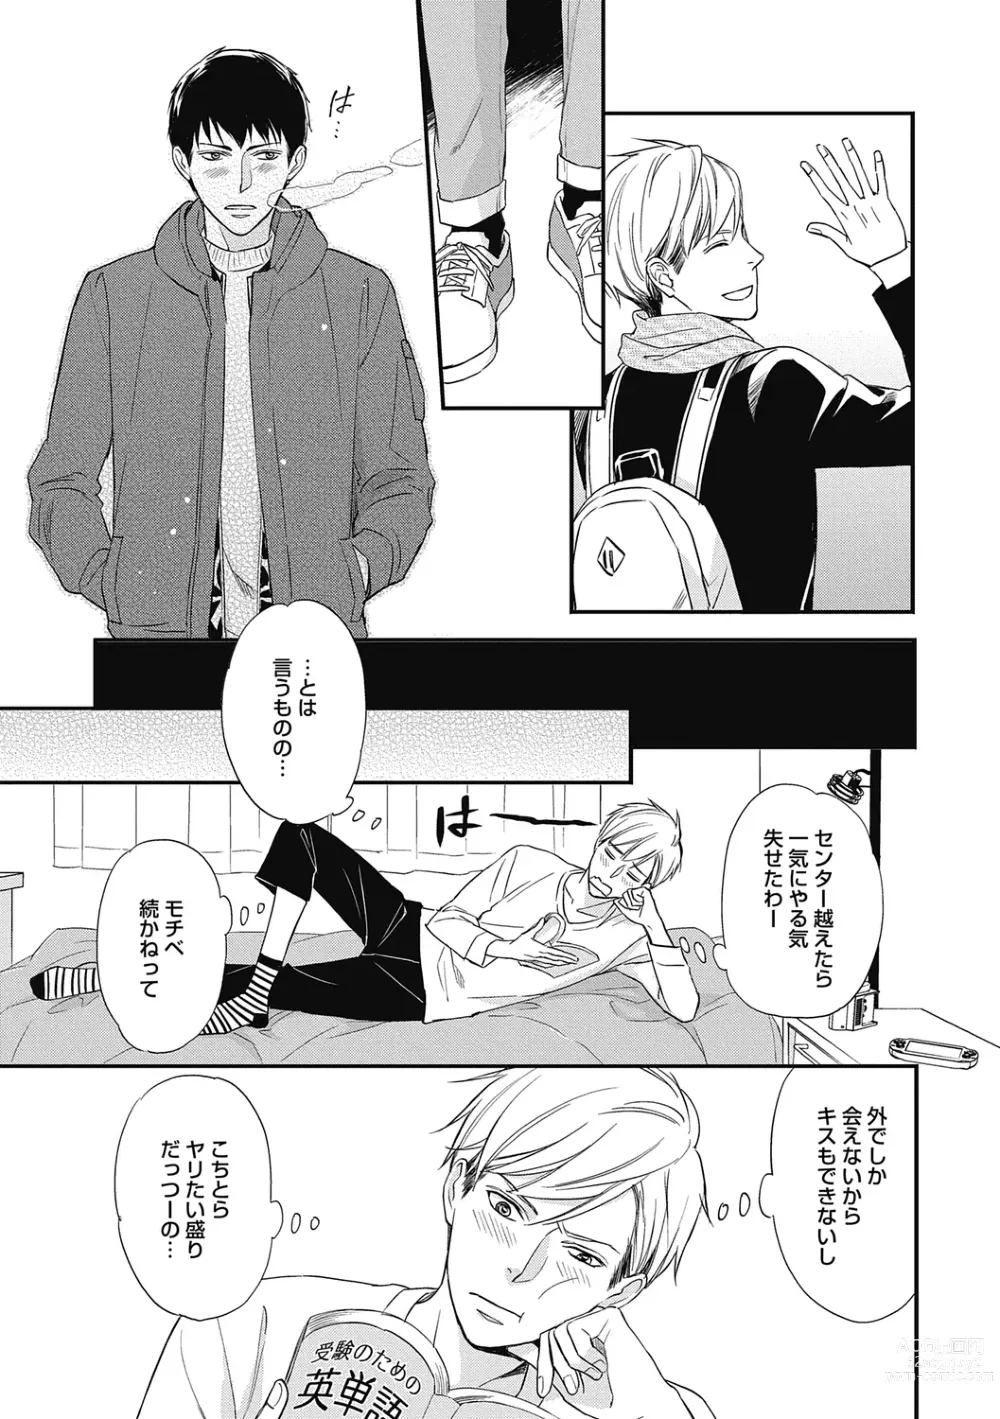 Page 11 of manga Saeki-kun wa Are ga Shitai